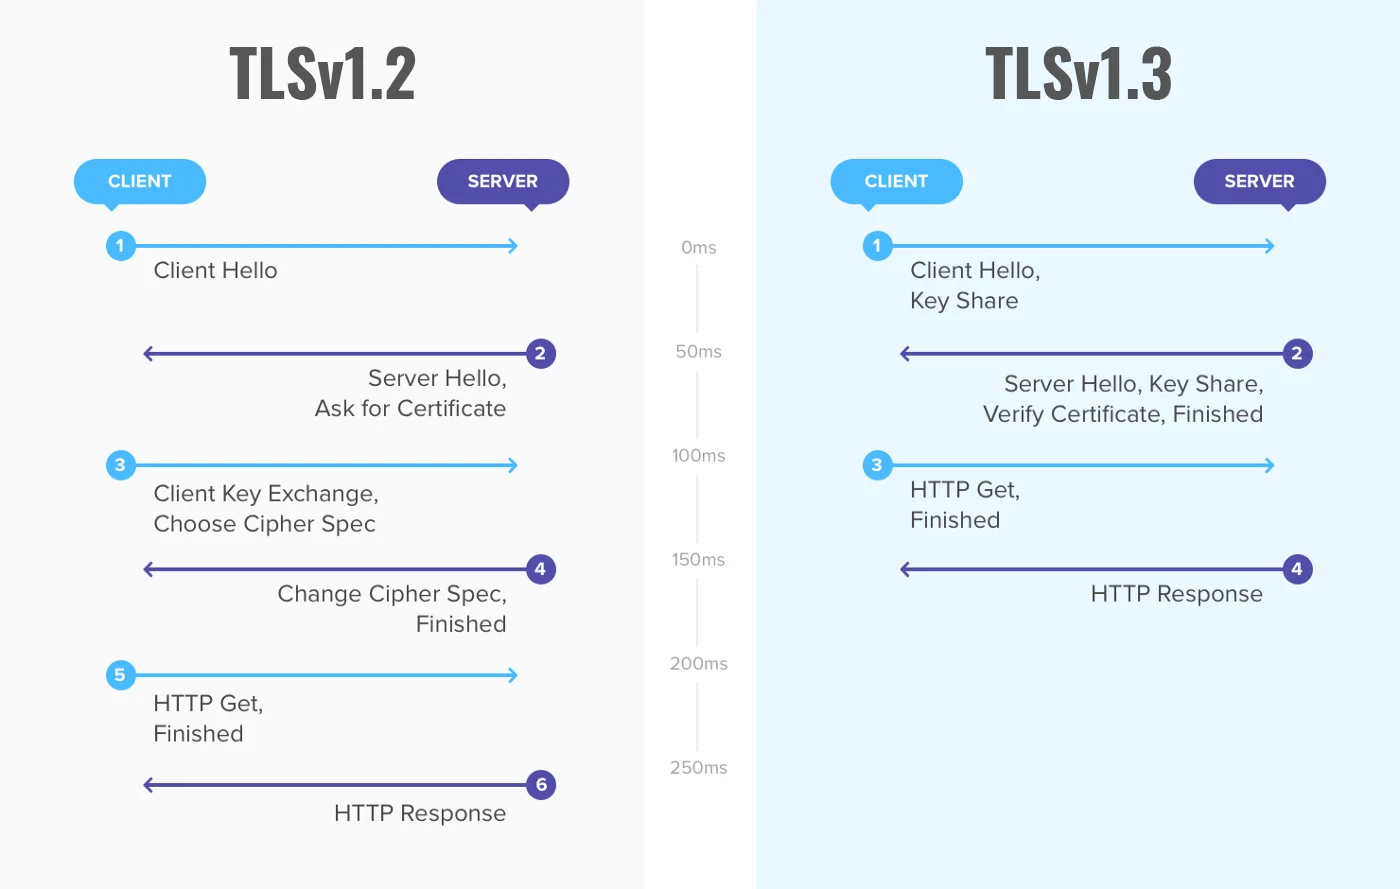 De verschillen tussen TLSv1.2 en TLSv1.3